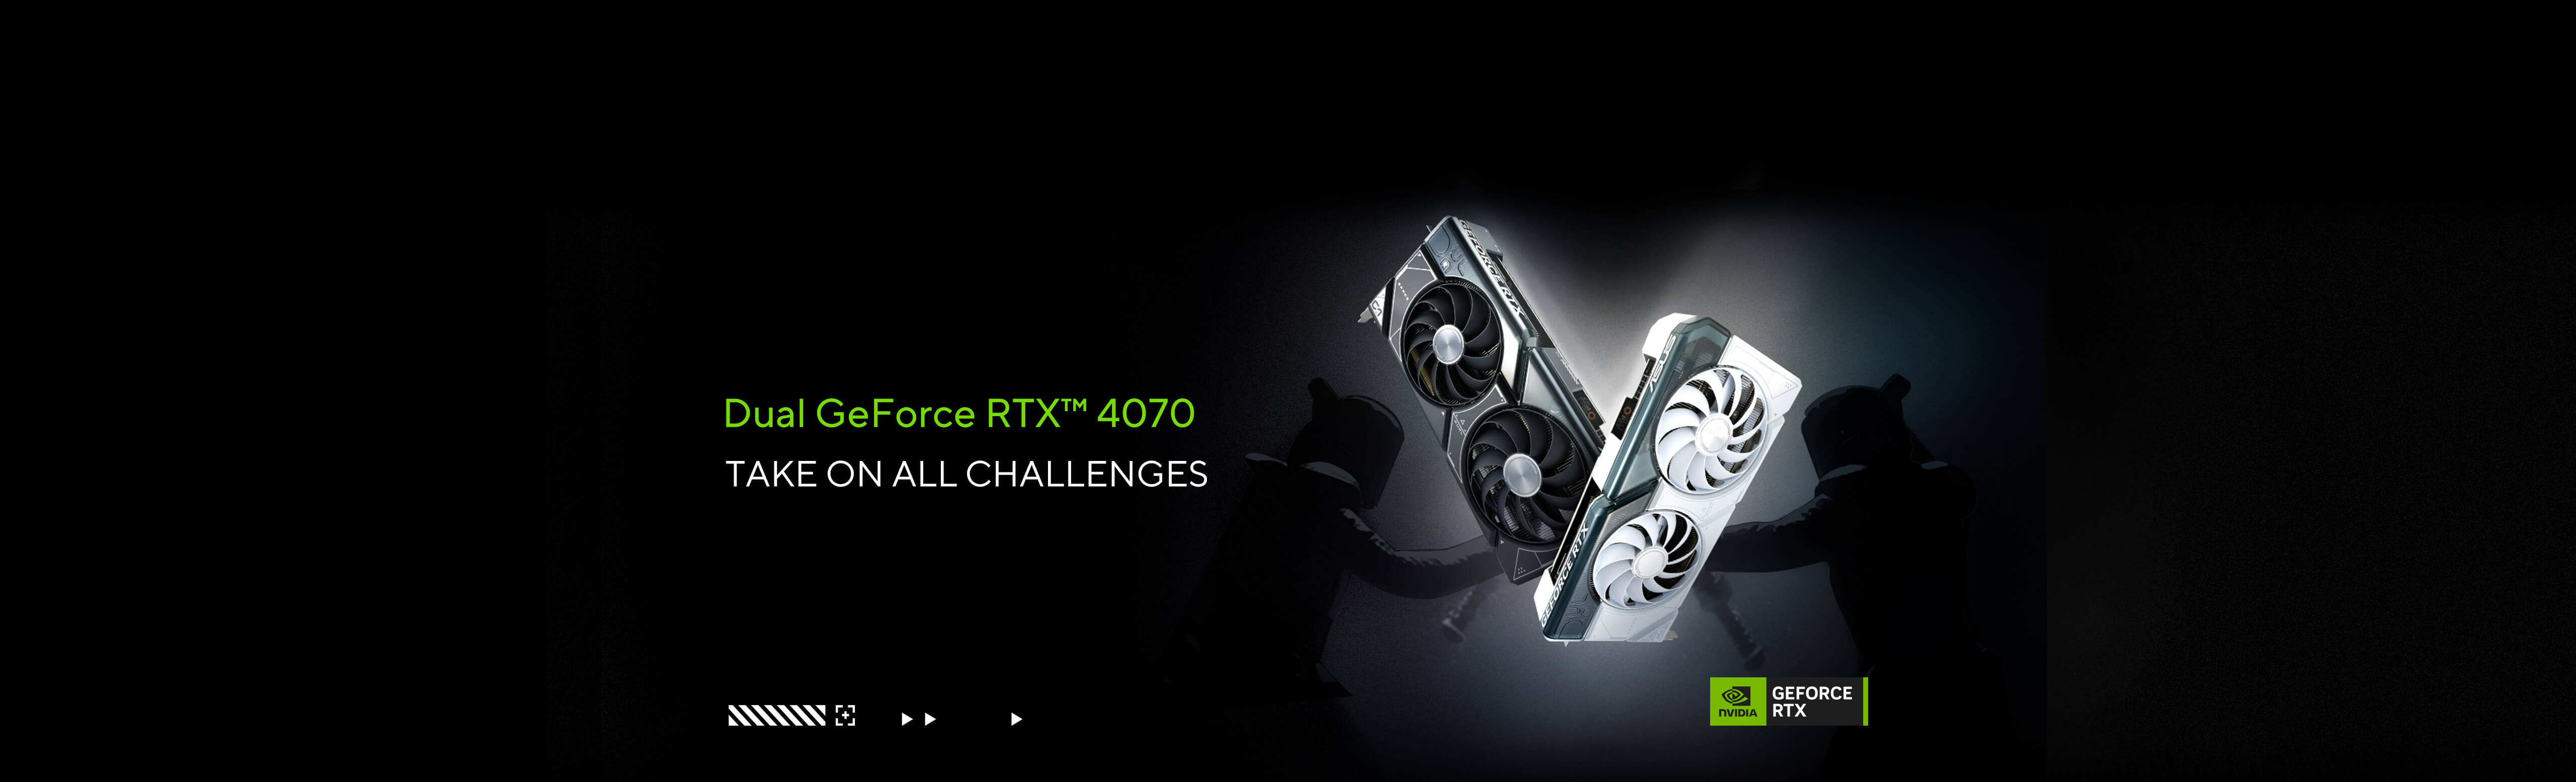 兩名武士手持武士刀，黑白雙色 ASUS Dual GeForce RTX™ 4070 顯示卡取代刀刃，左下角有 NVIDIA GeForce 標誌。